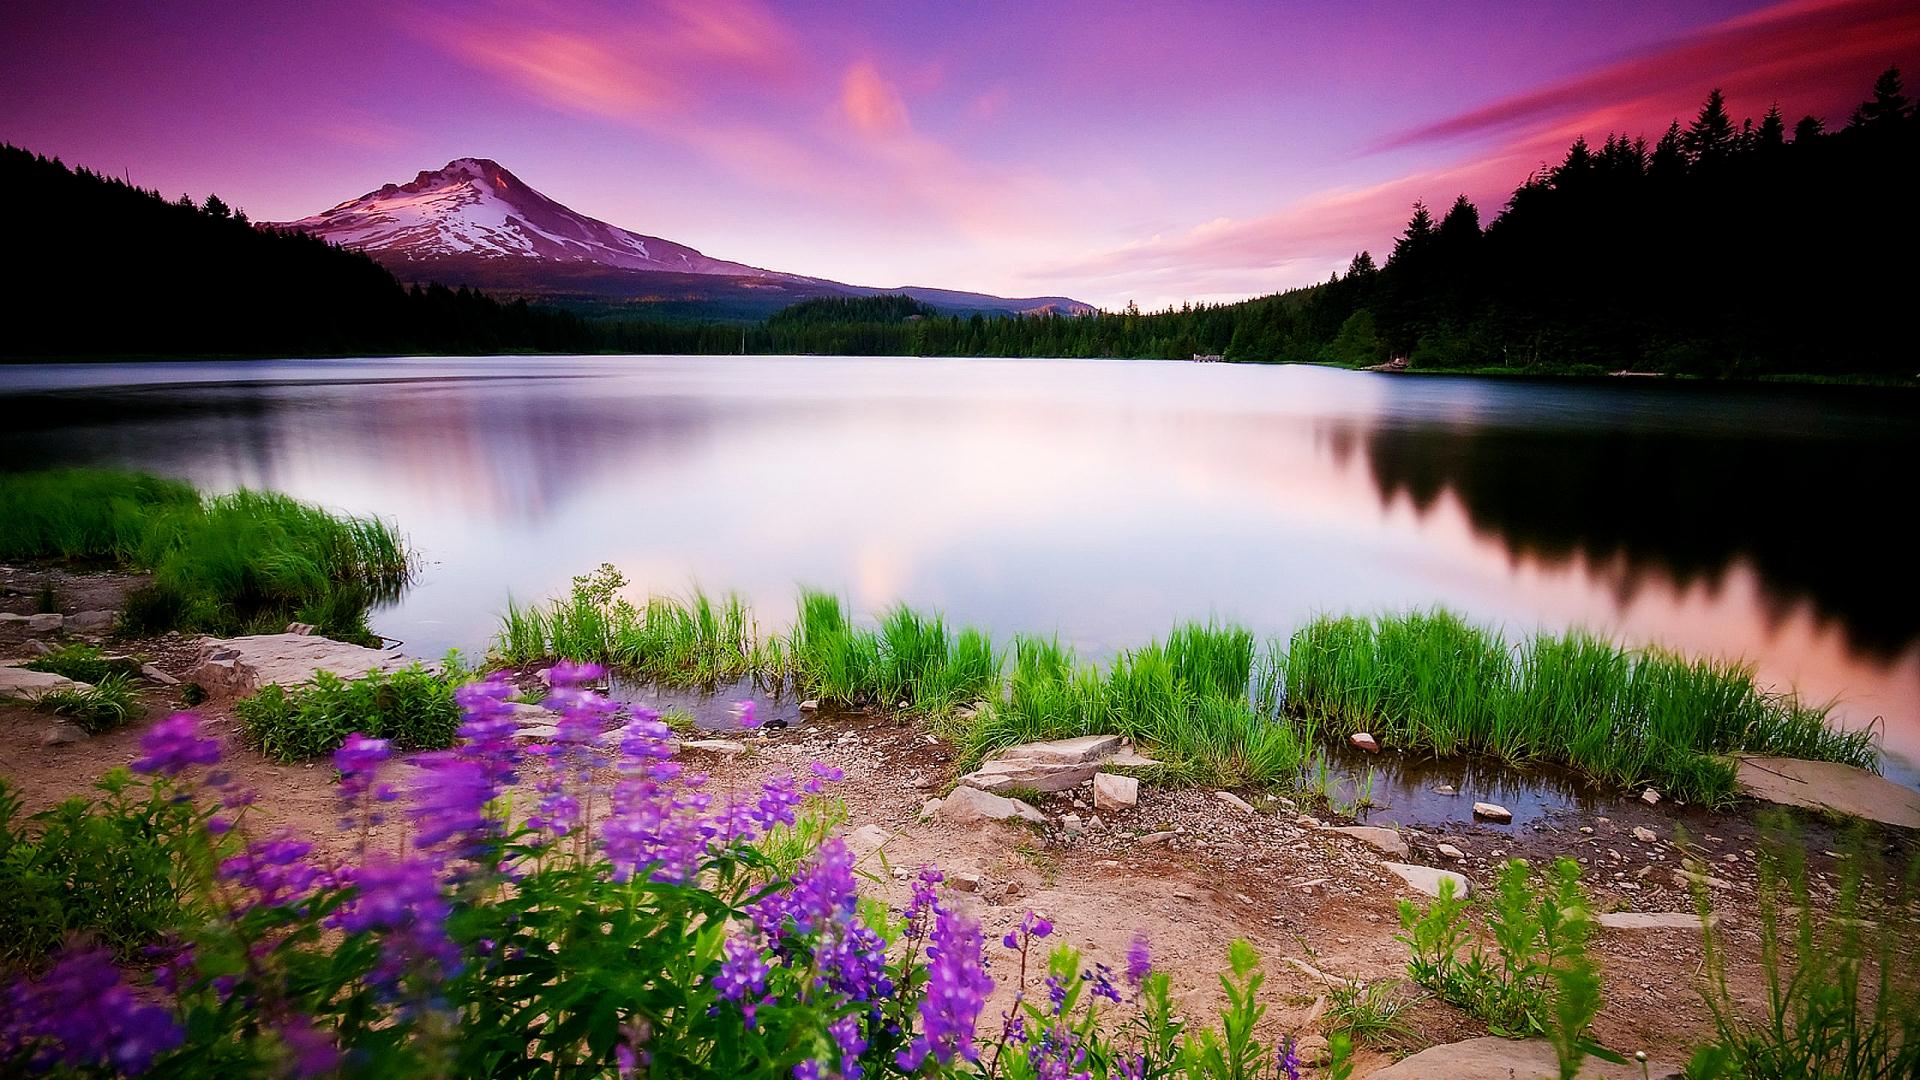 natural images hd wallpaper desktop background,natural landscape,nature,lake,wilderness,reflection